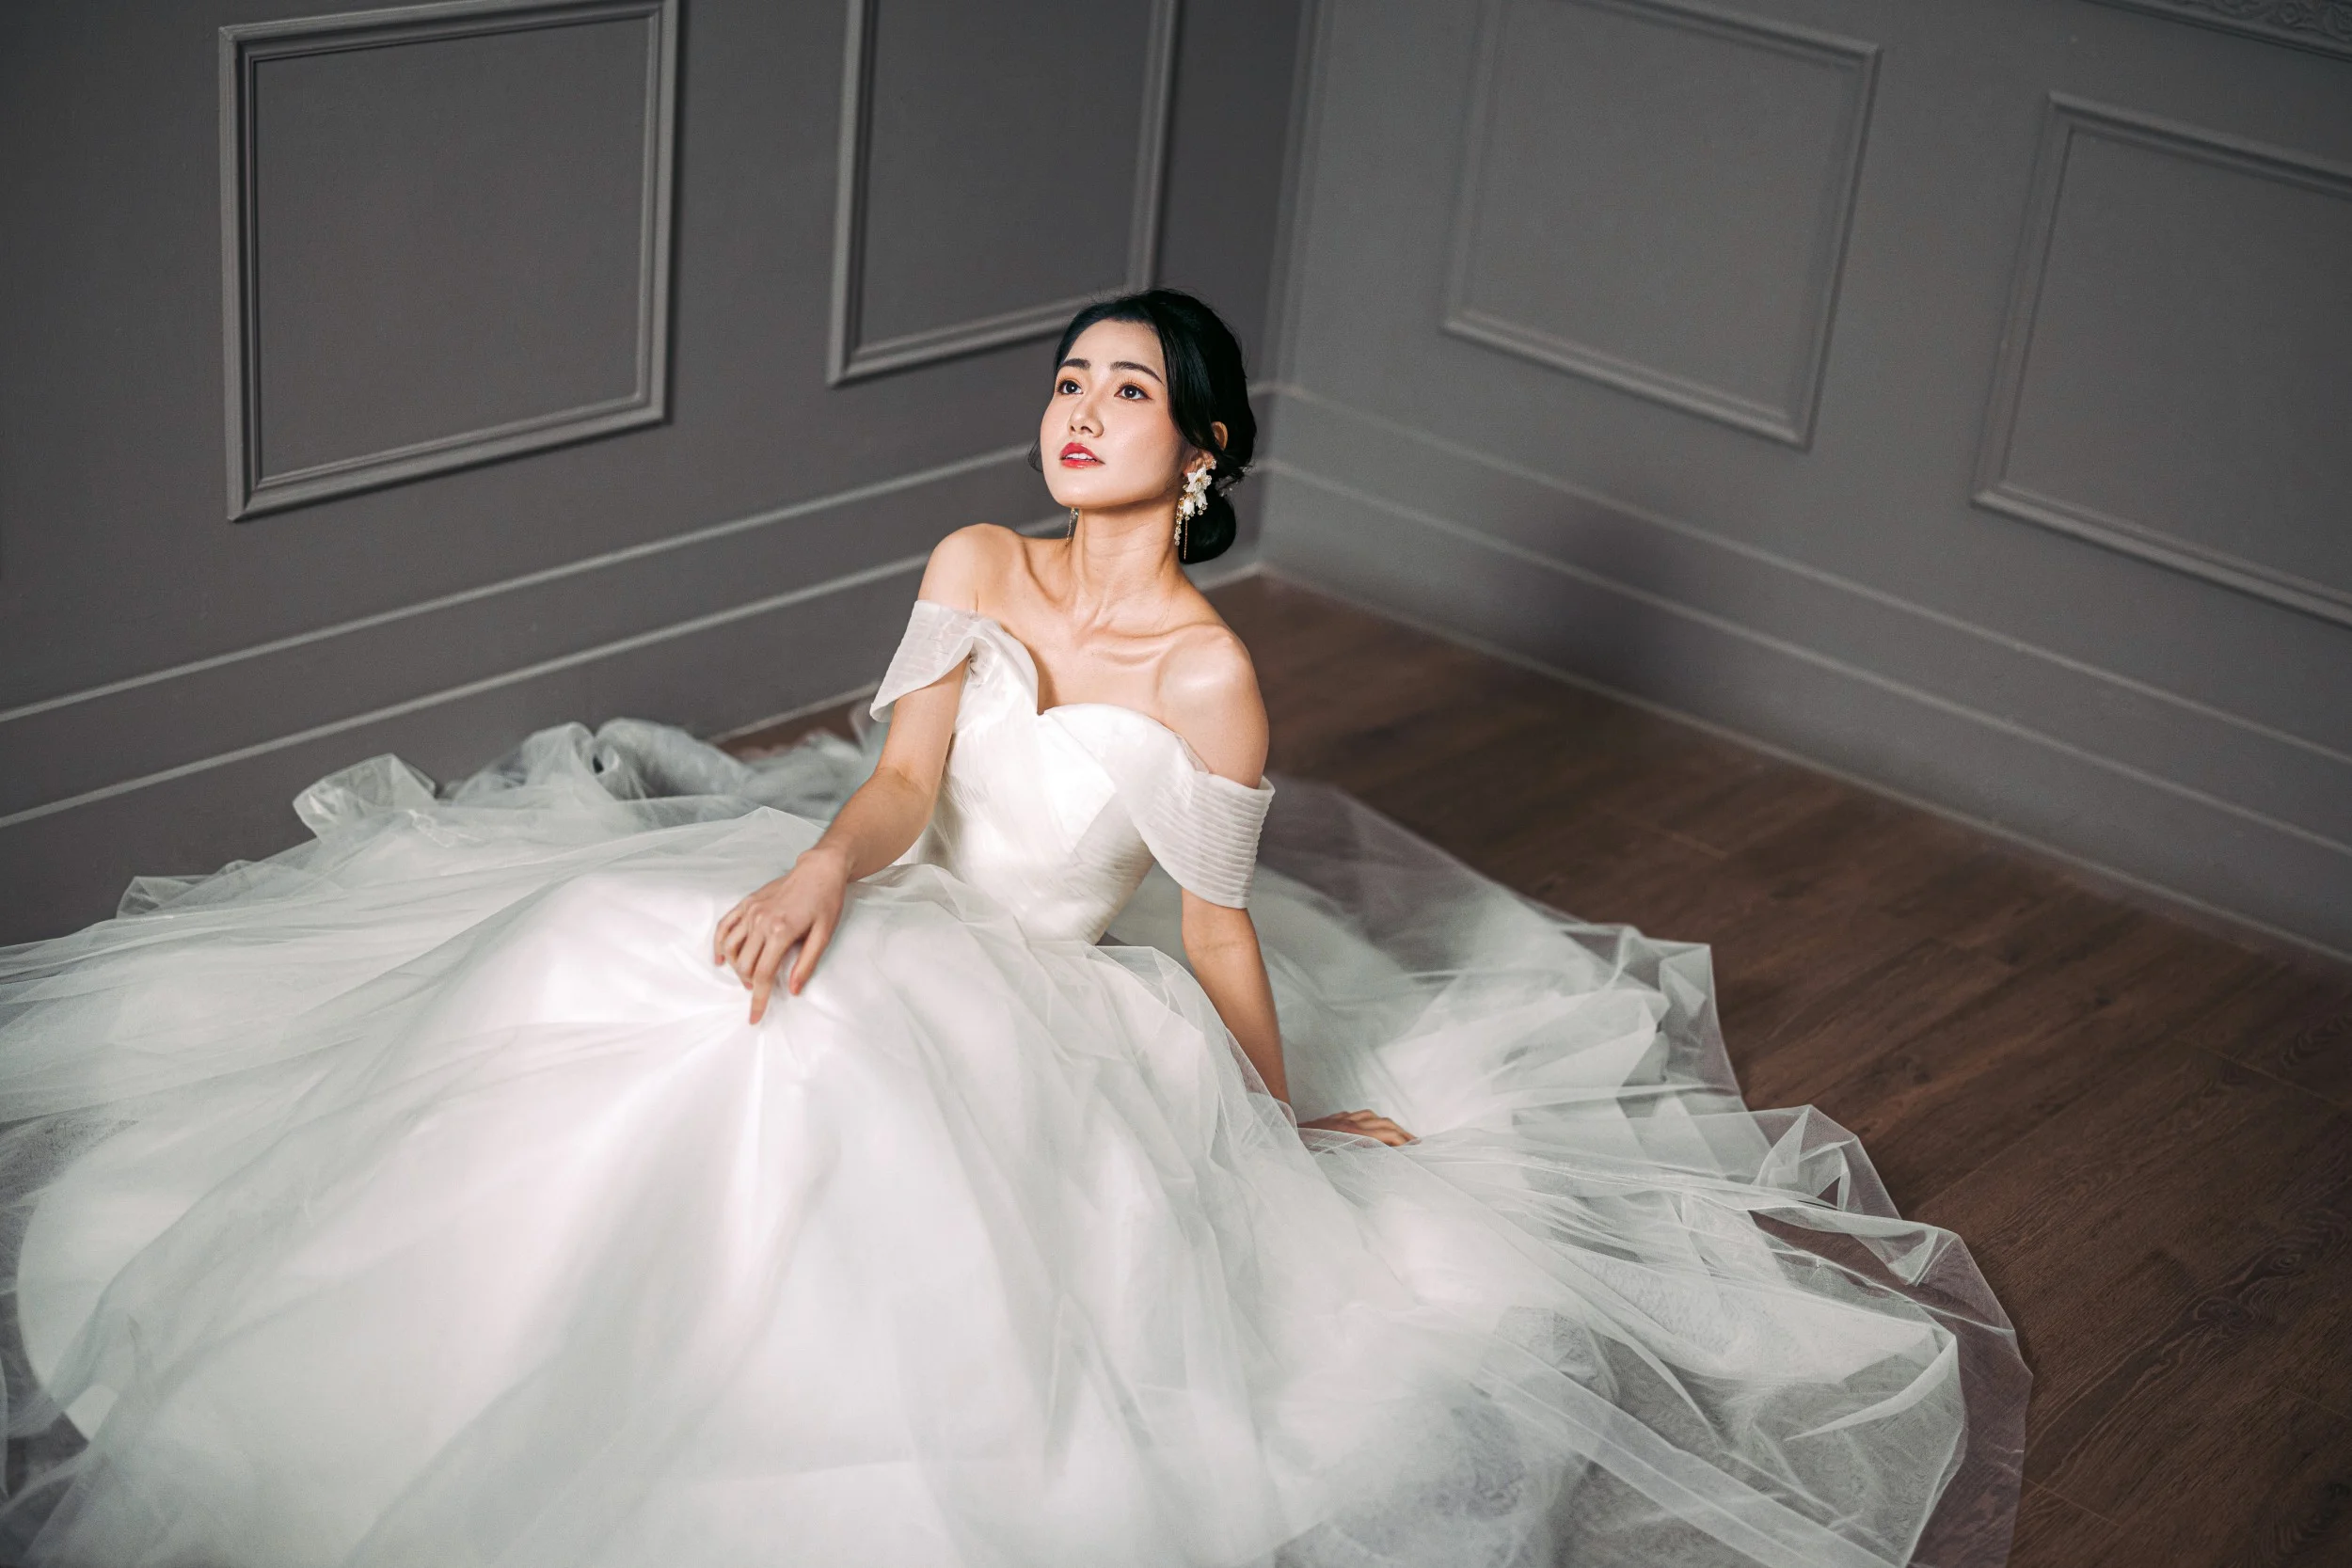 Cinderella in Wedding Dress by DylanBonner on DeviantArt